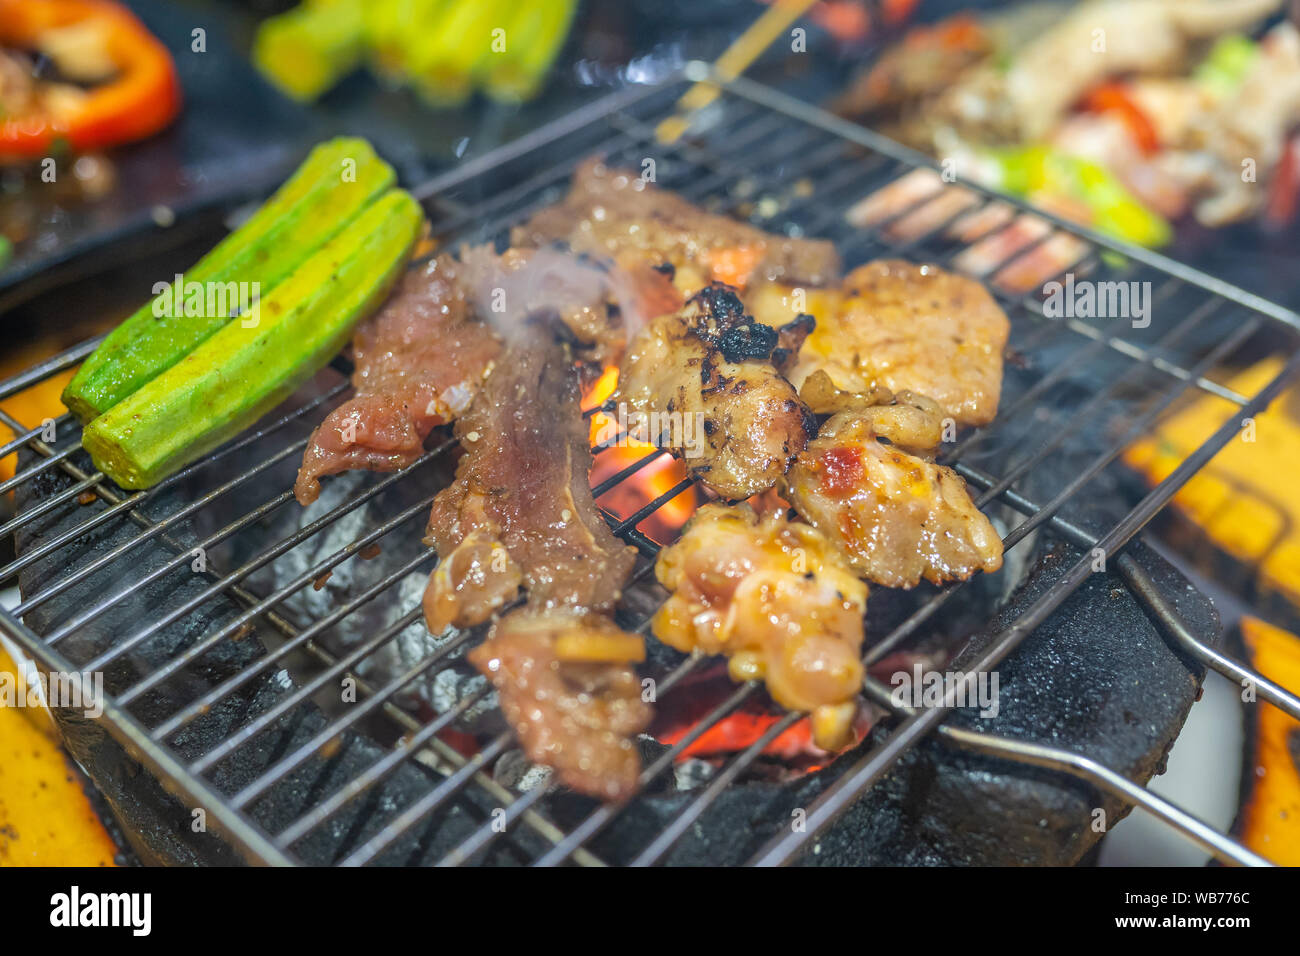 Grillen mariniertes Fleisch und Lady Finger Gemüse auf Holzkohle Herd  Stockfotografie - Alamy